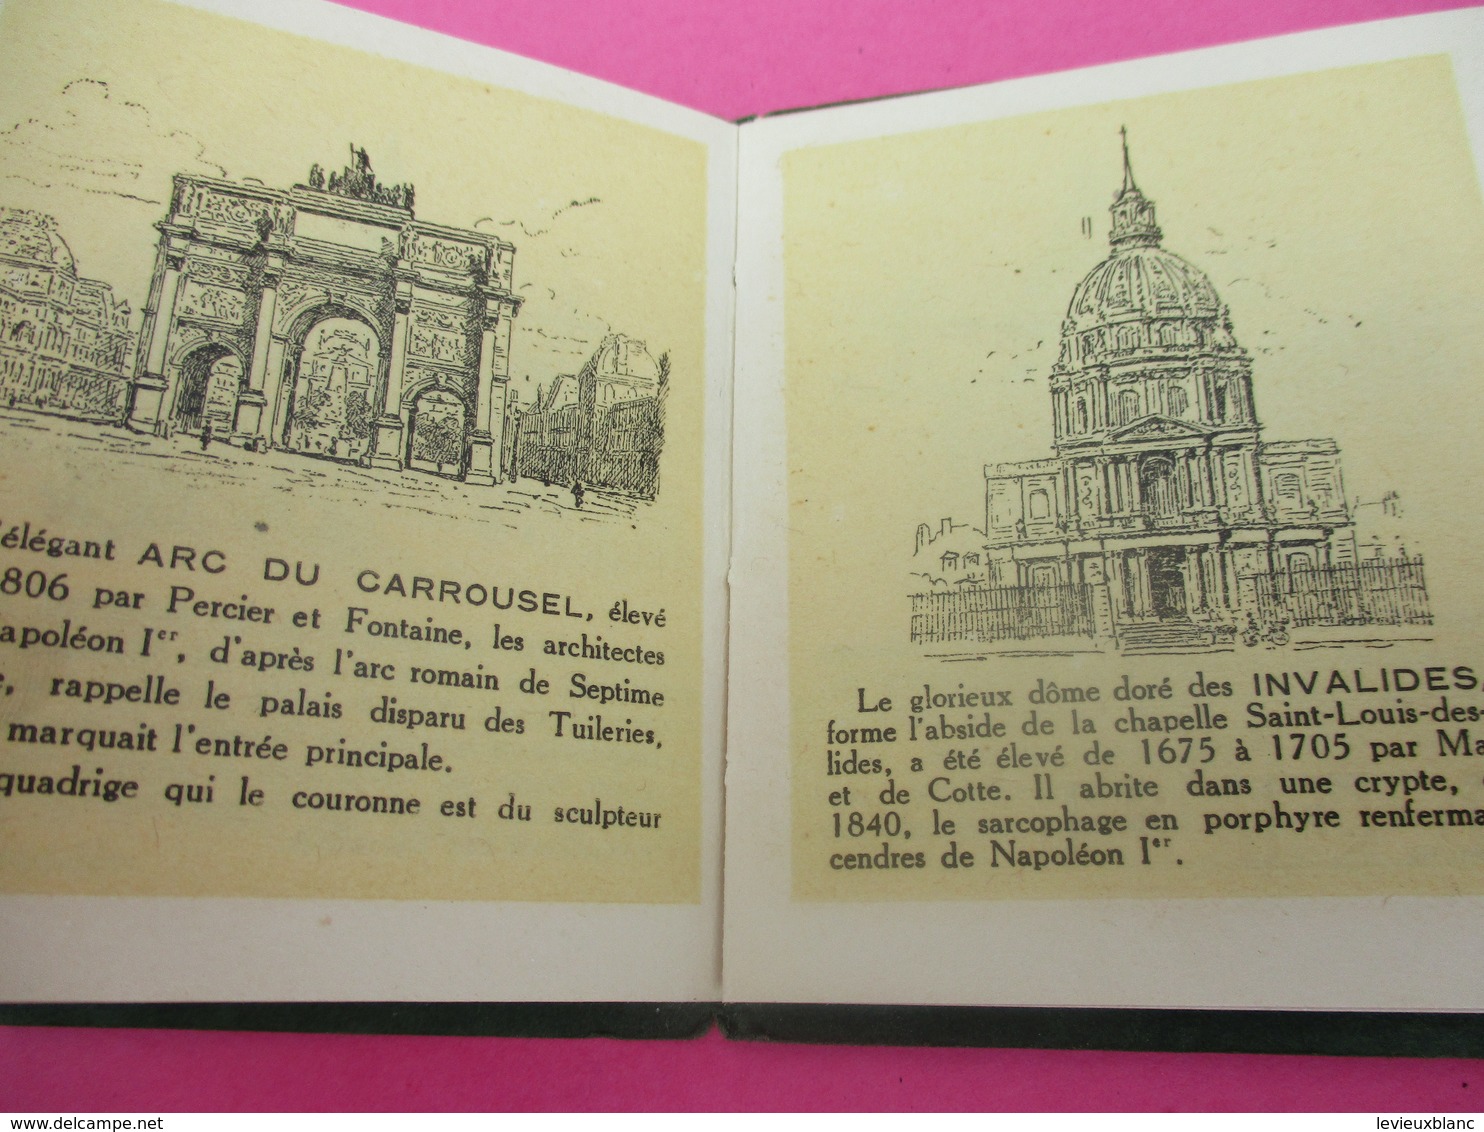 Petit livret touristique/ "PARIS MINIATURE"/Offert par les Grands Magasins du PRINTEMPS/Vers 1900-20             VPN142